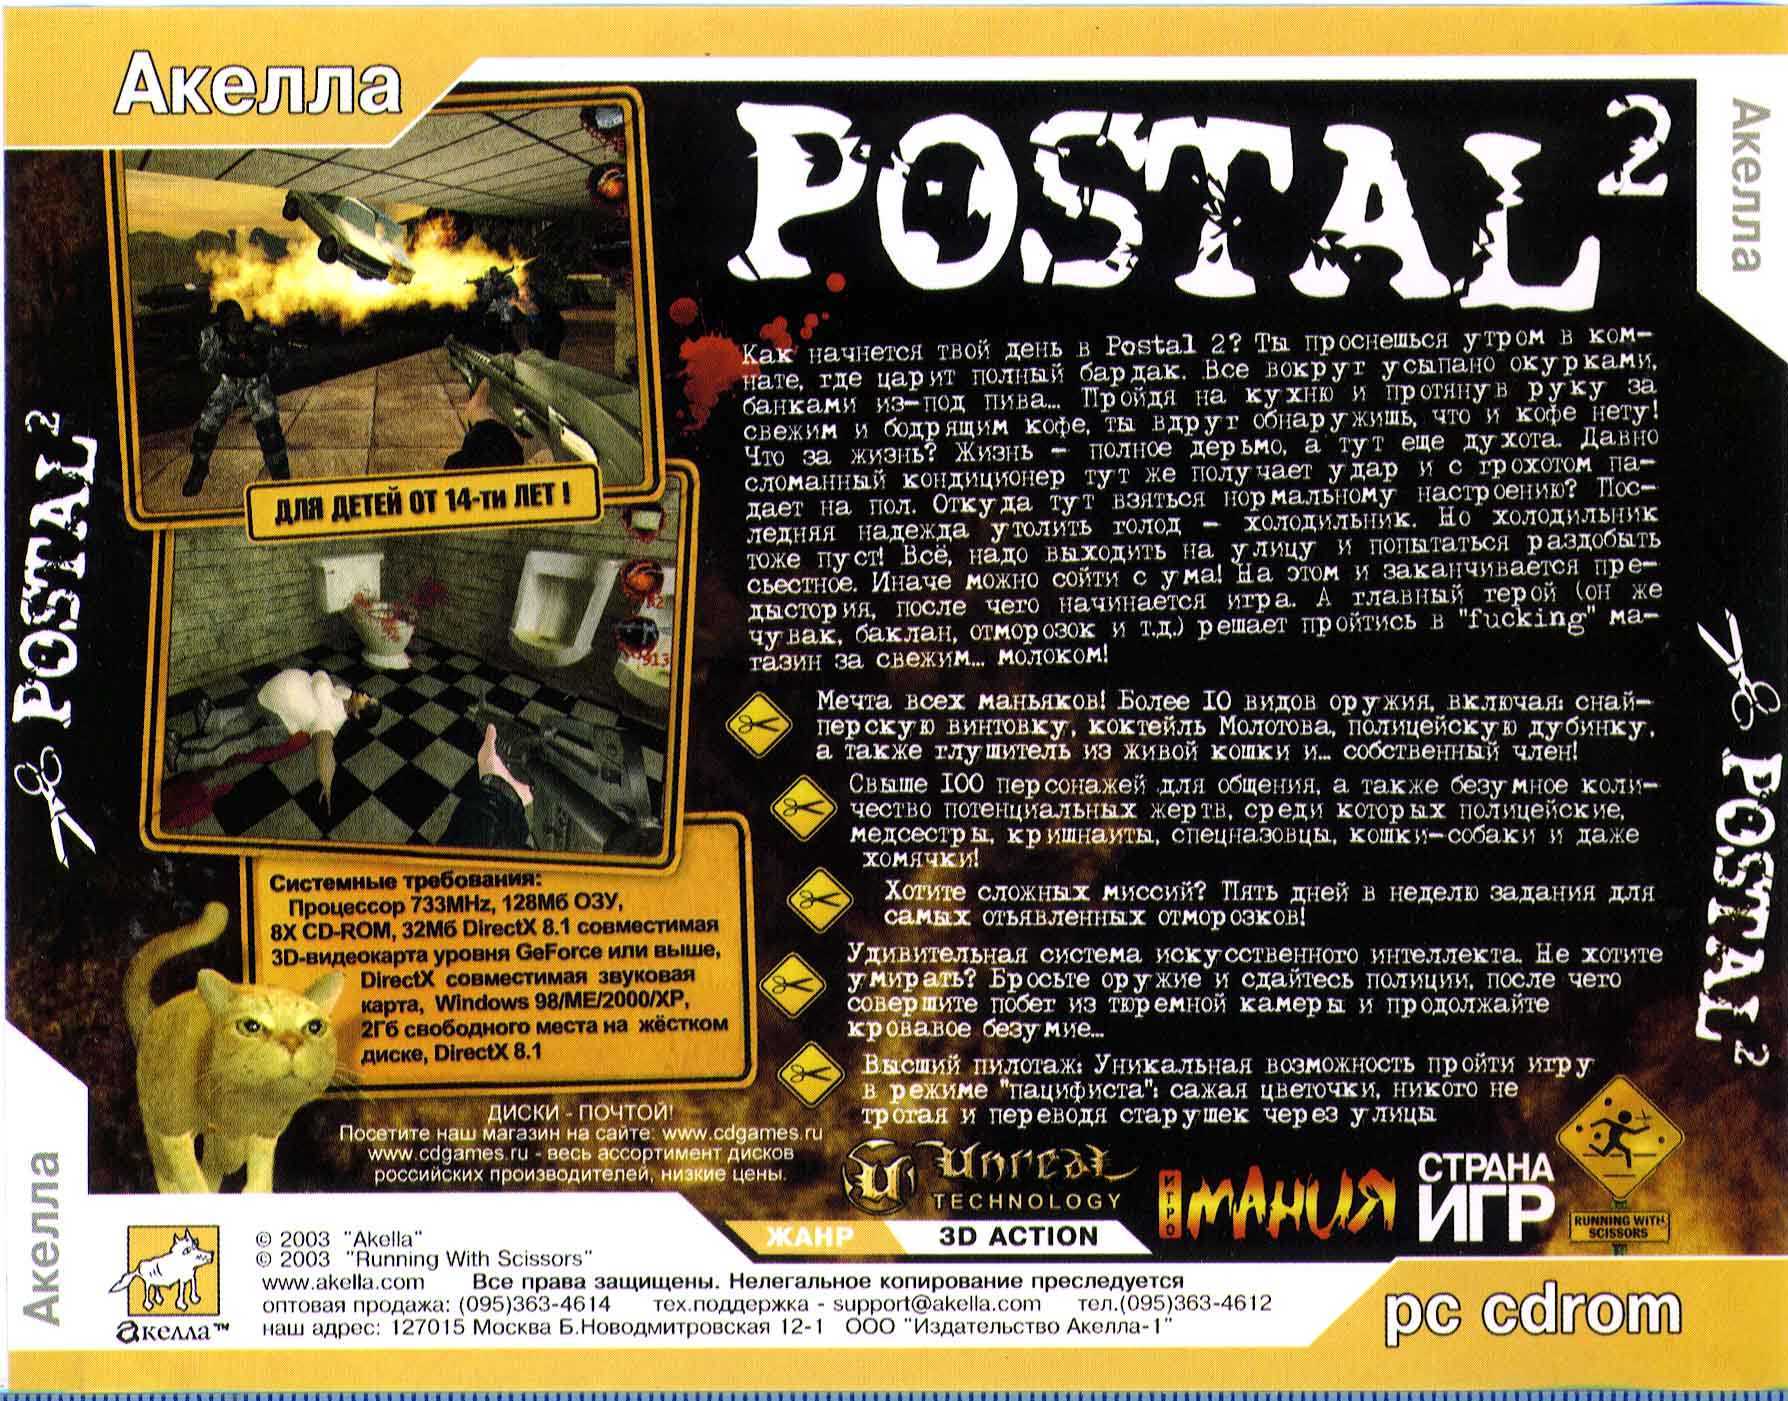 Postal 2 awp delete review торрент фото 49